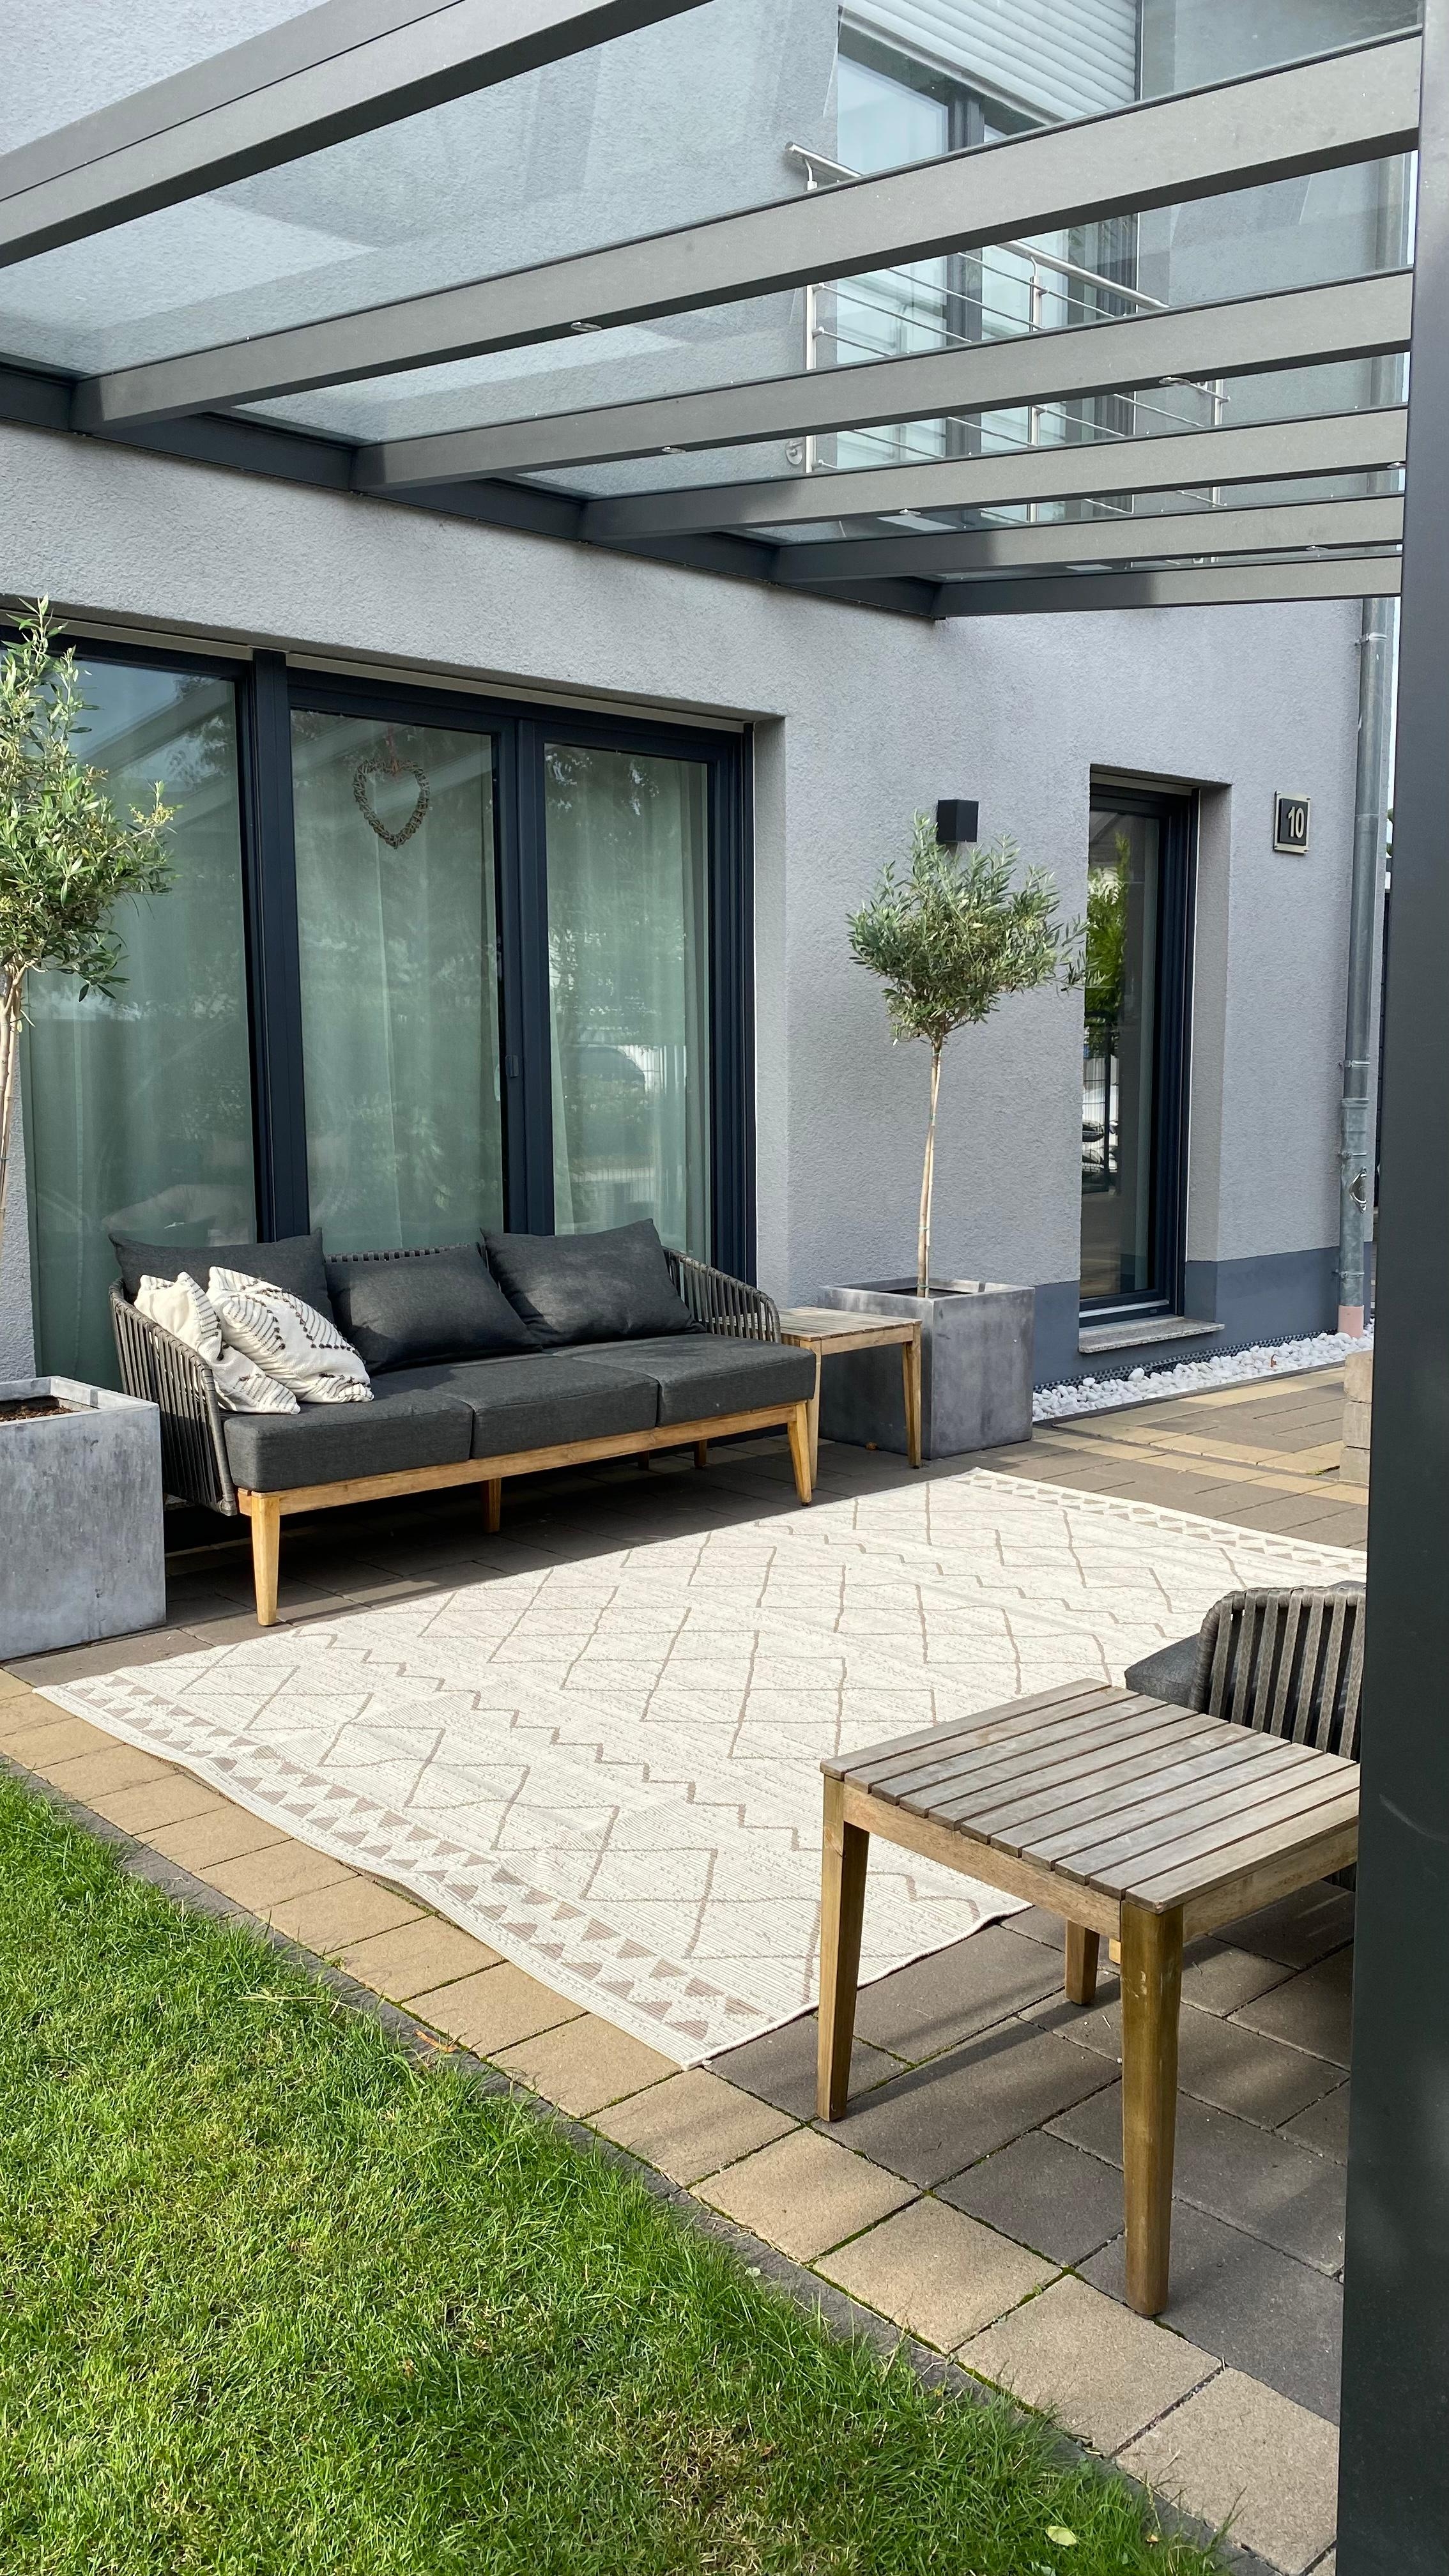 Die #Terrasse hat nun einen #outdoorteppich 
#garten #lounge 